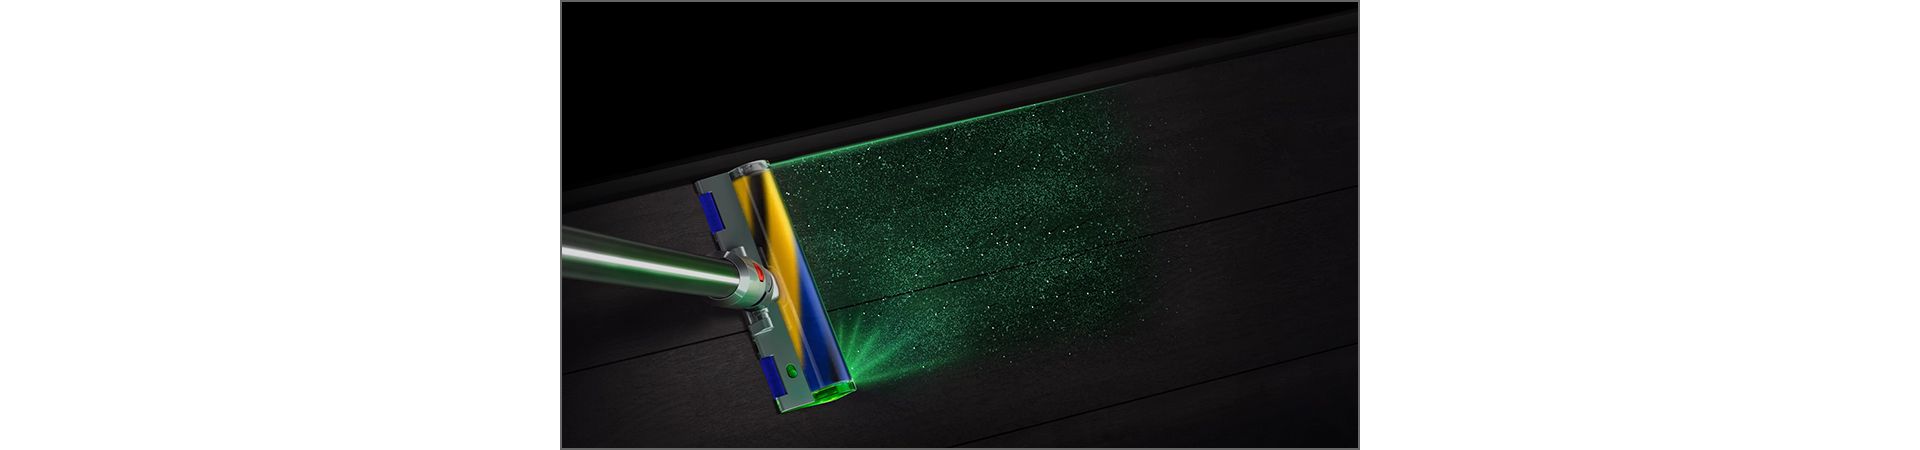 מברשת פלאפי  Dyson Laser Slim Fluffy מגלה חלקיקי אבק